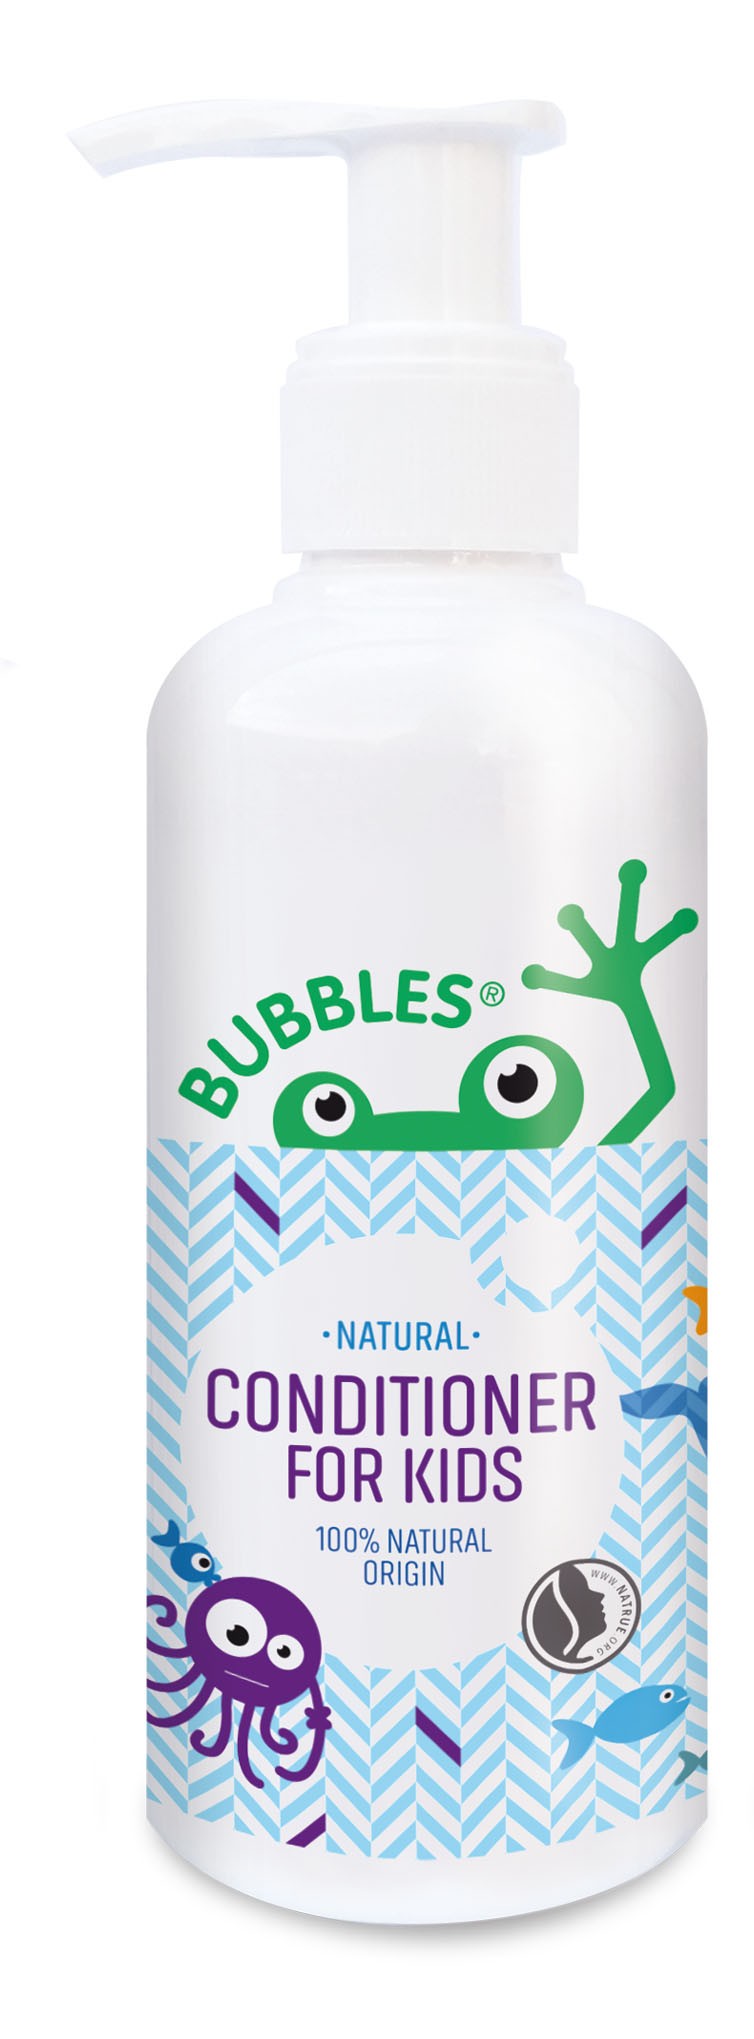 Bubbles kondicionierius vaikams 200 ml